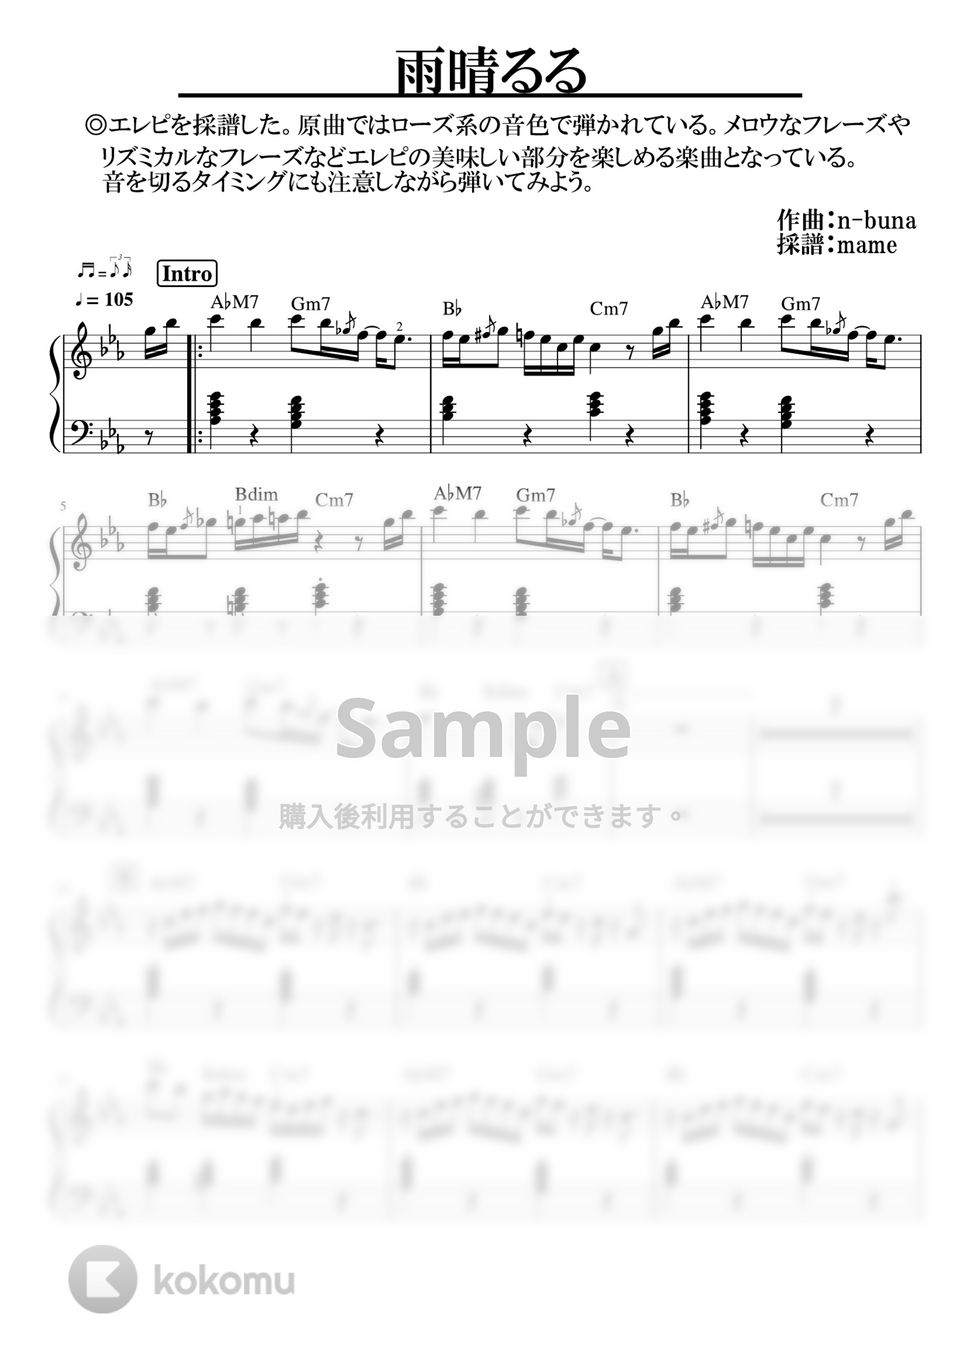 ヨルシカ - 雨晴るる (ピアノパート) by mame